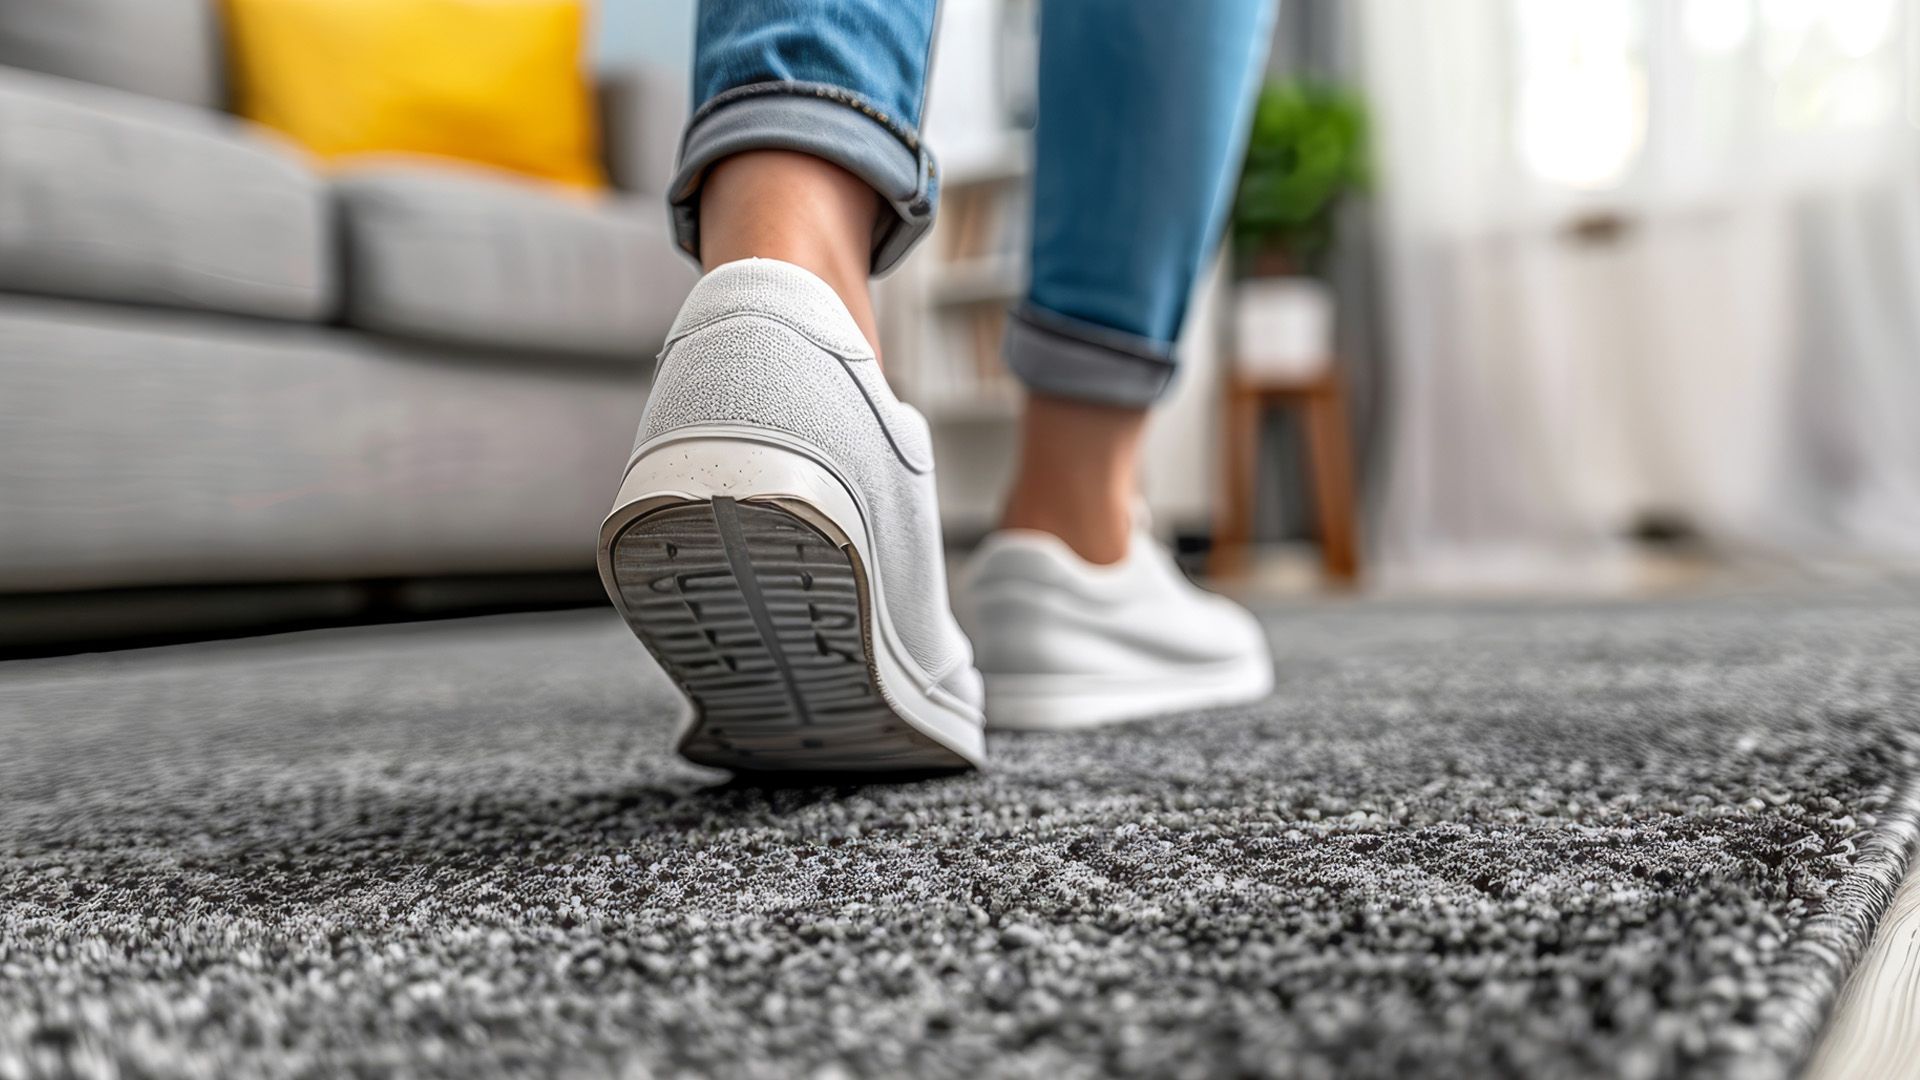 Schuhe in der Wohnung tragen: Ein Risiko für deine Gesundheit?